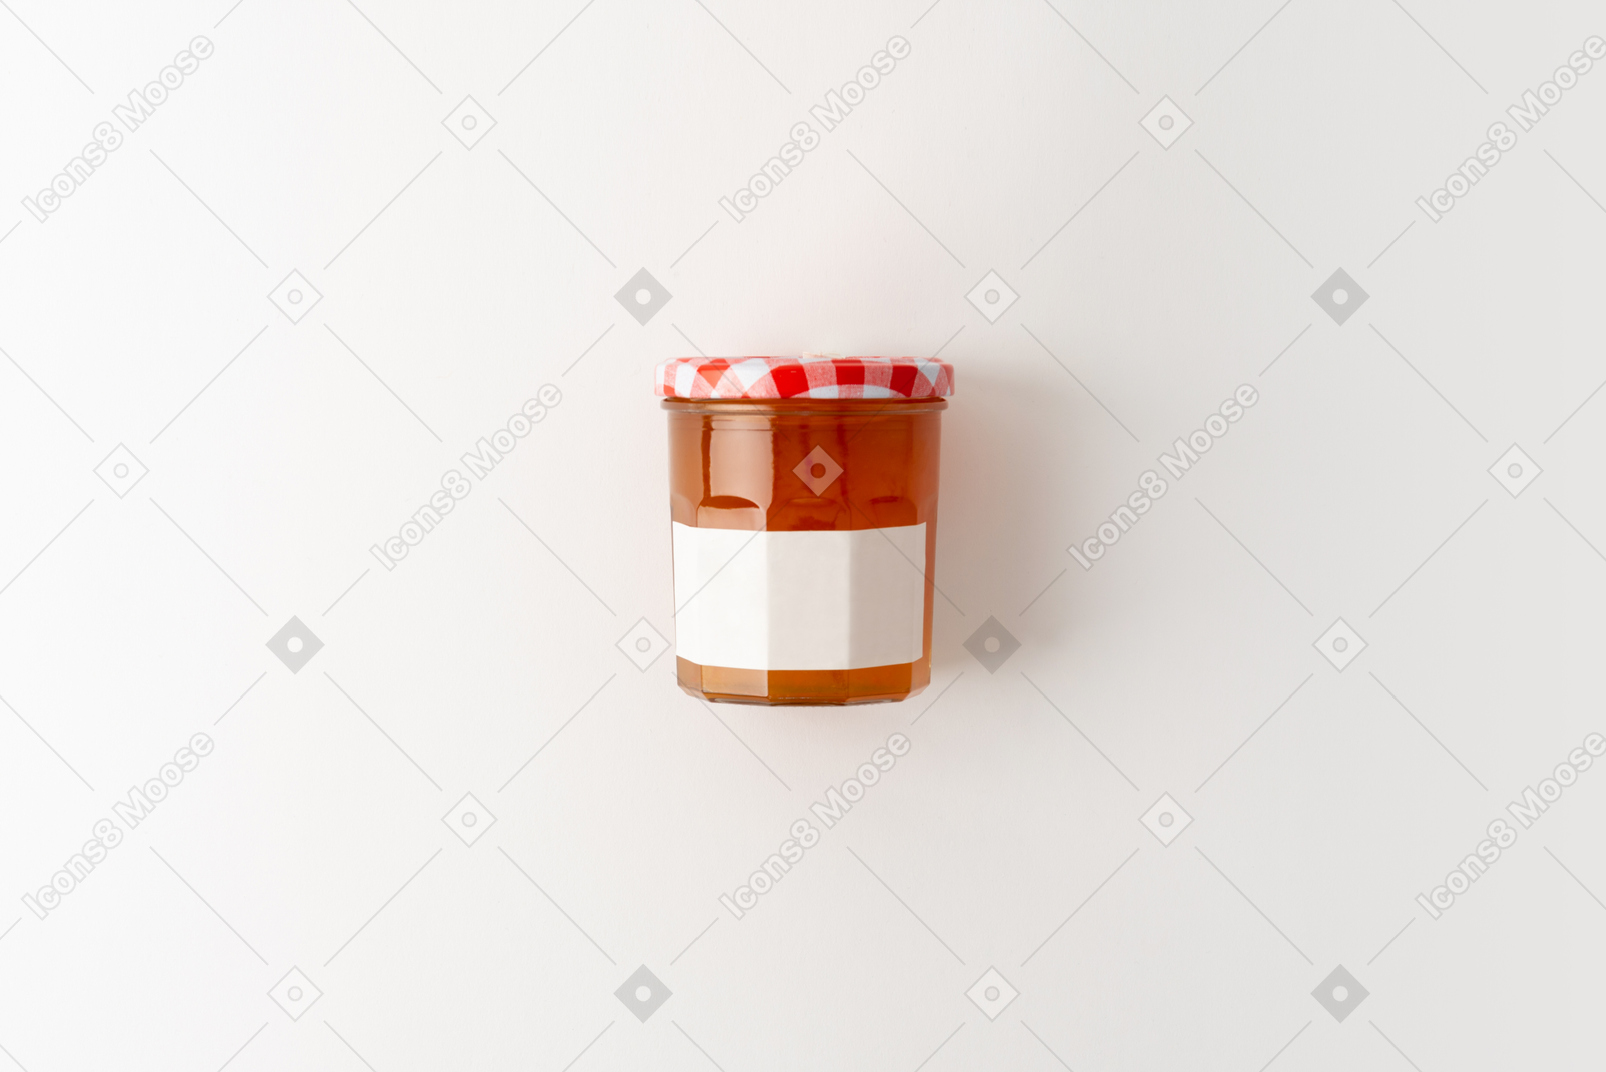 Ein glas honig oder marmelade